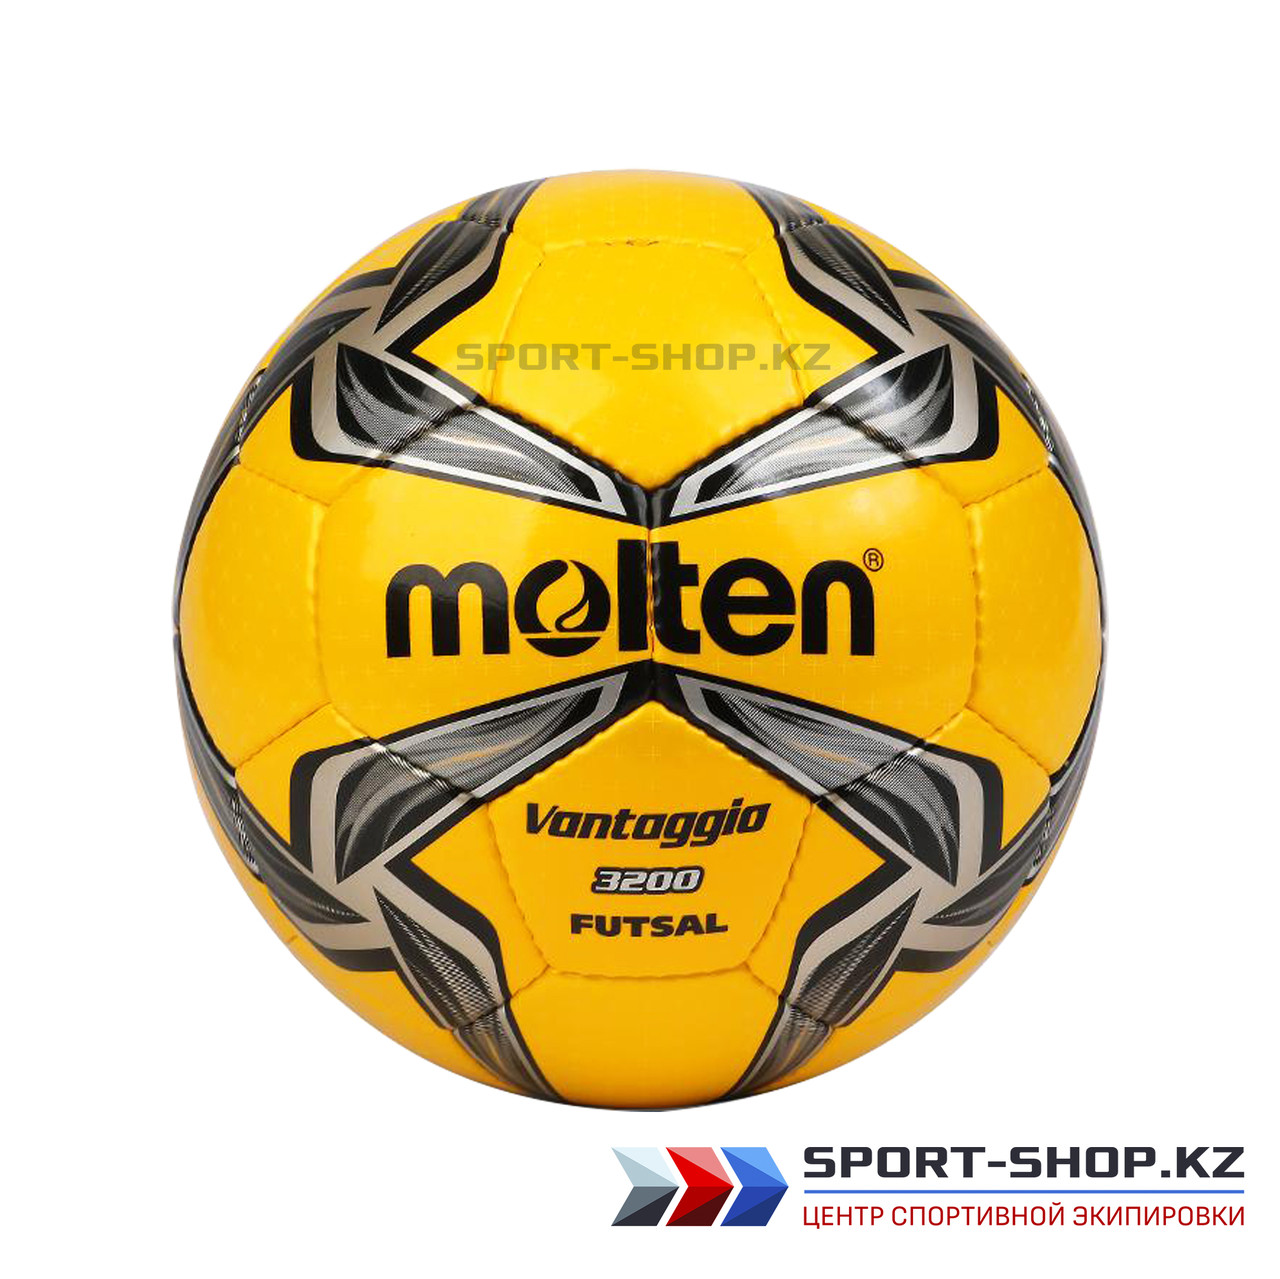 Футбольный мяч MOLTEN 3200 FUTSAL